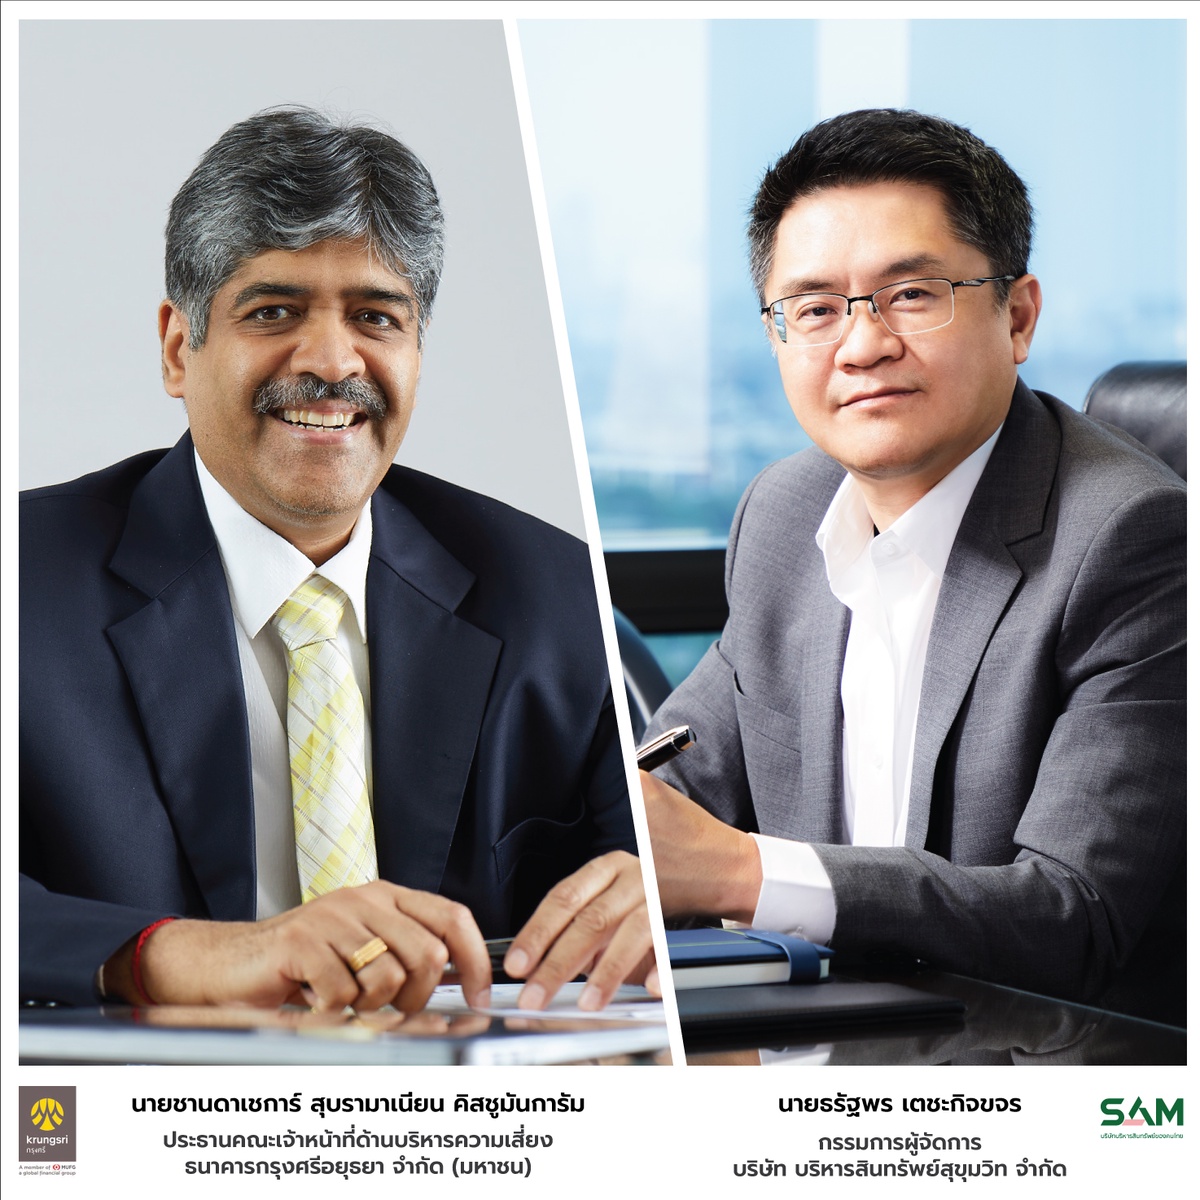 SAM บริษัทบริหารสินทรัพย์ของคนไทย ชูบทบาท AMC ภาครัฐ เผยชนะประมูลหนี้เสียจากแบงก์ ครึ่งปี 65 กวาด NPL เข้าพอร์ตแล้วกว่า 5,000 ลบ.